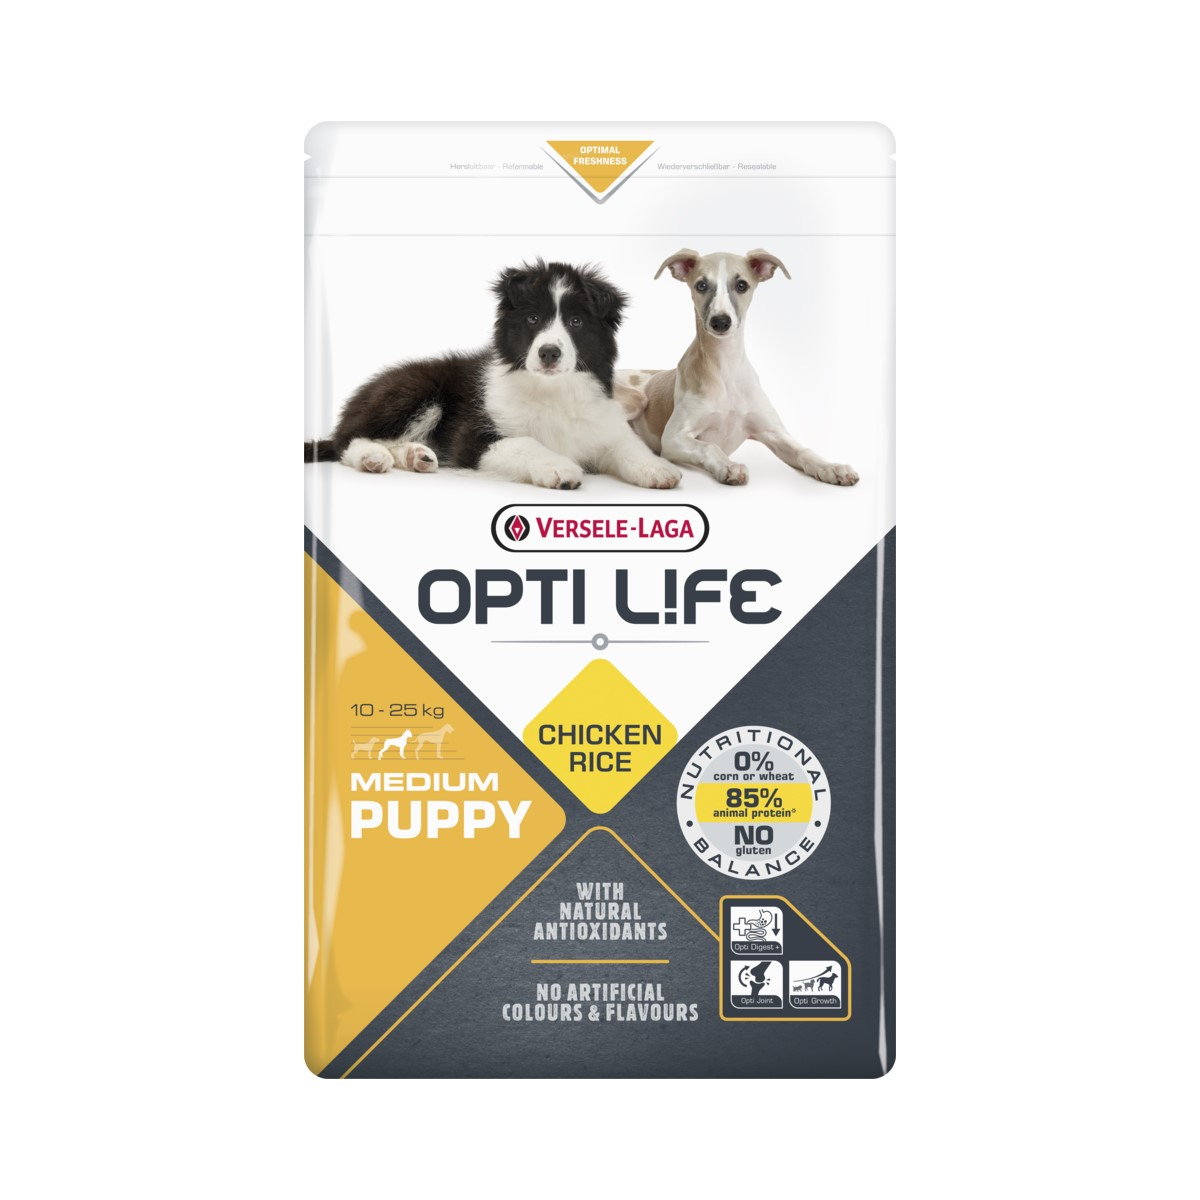 OPTI LIFE Puppy Medium